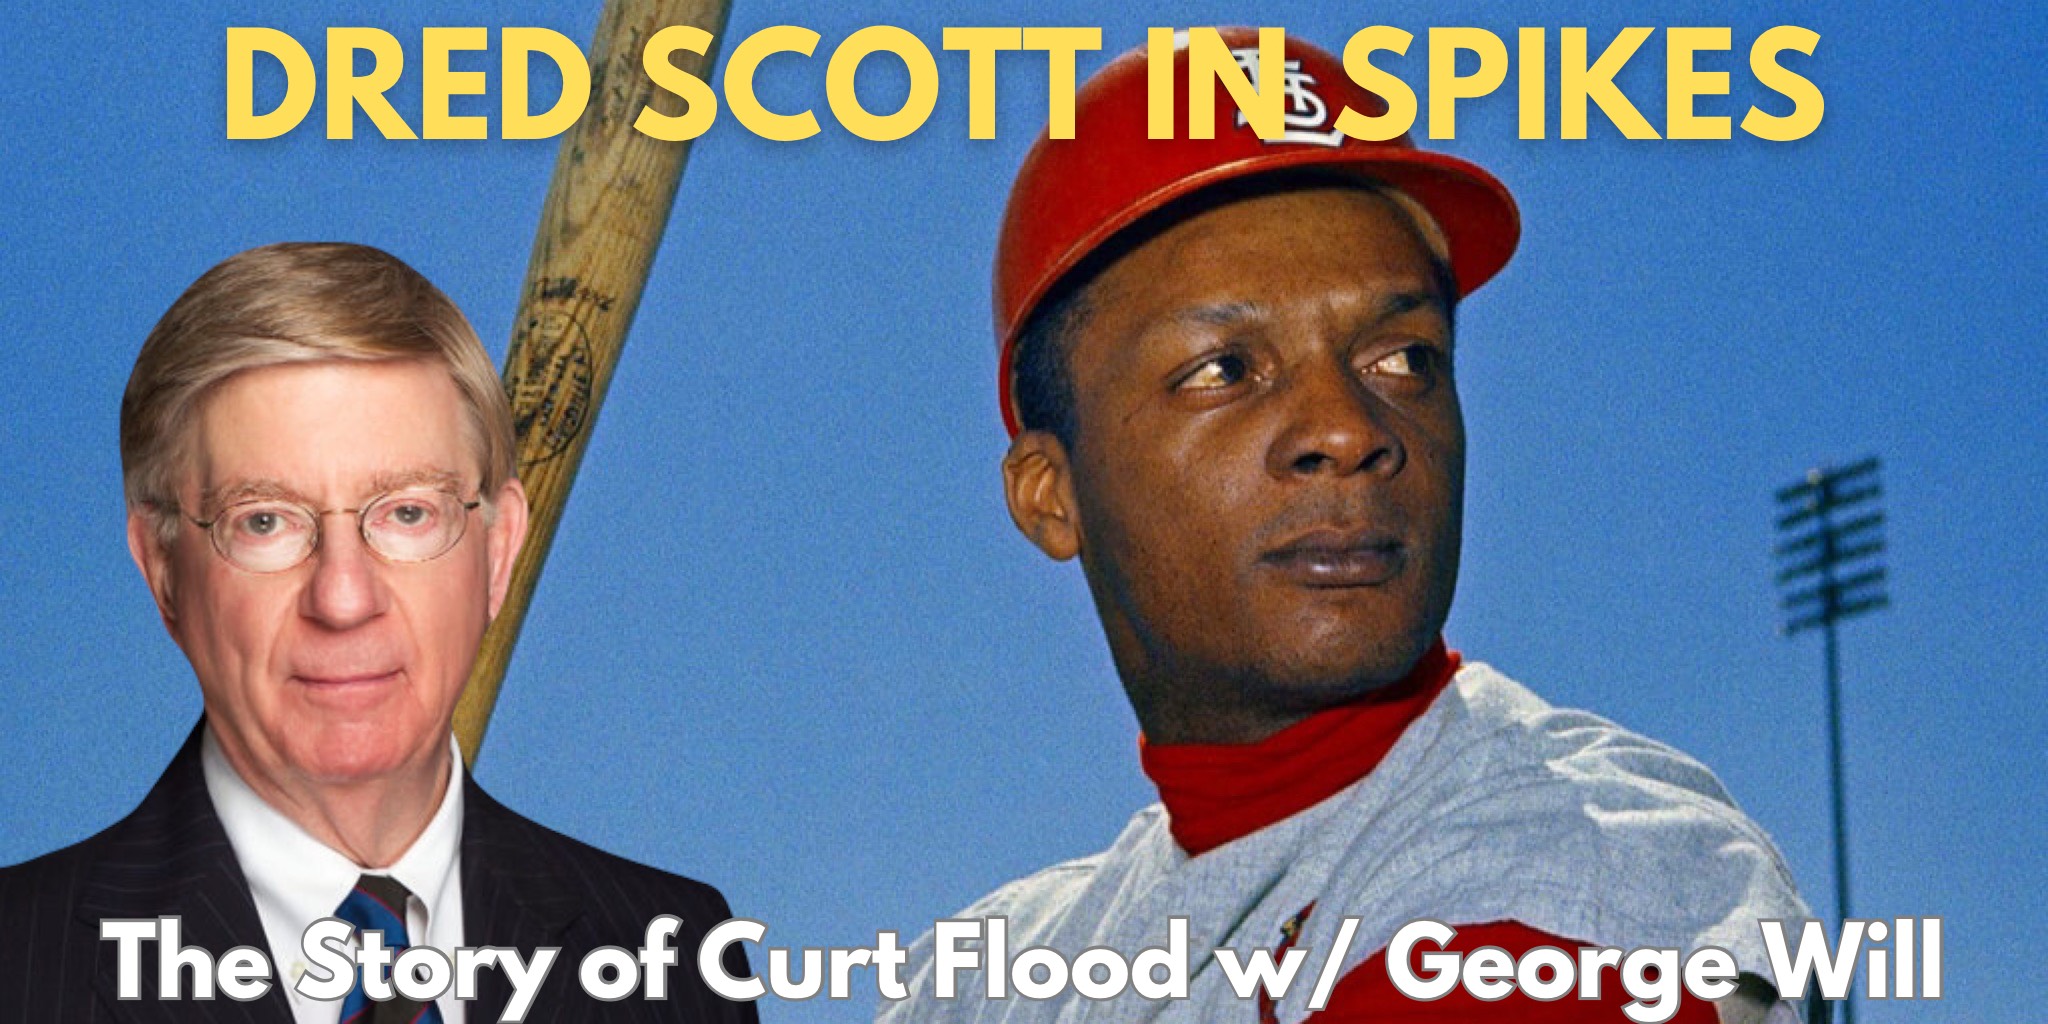 Dred Scott in Spikes: Curt Flood